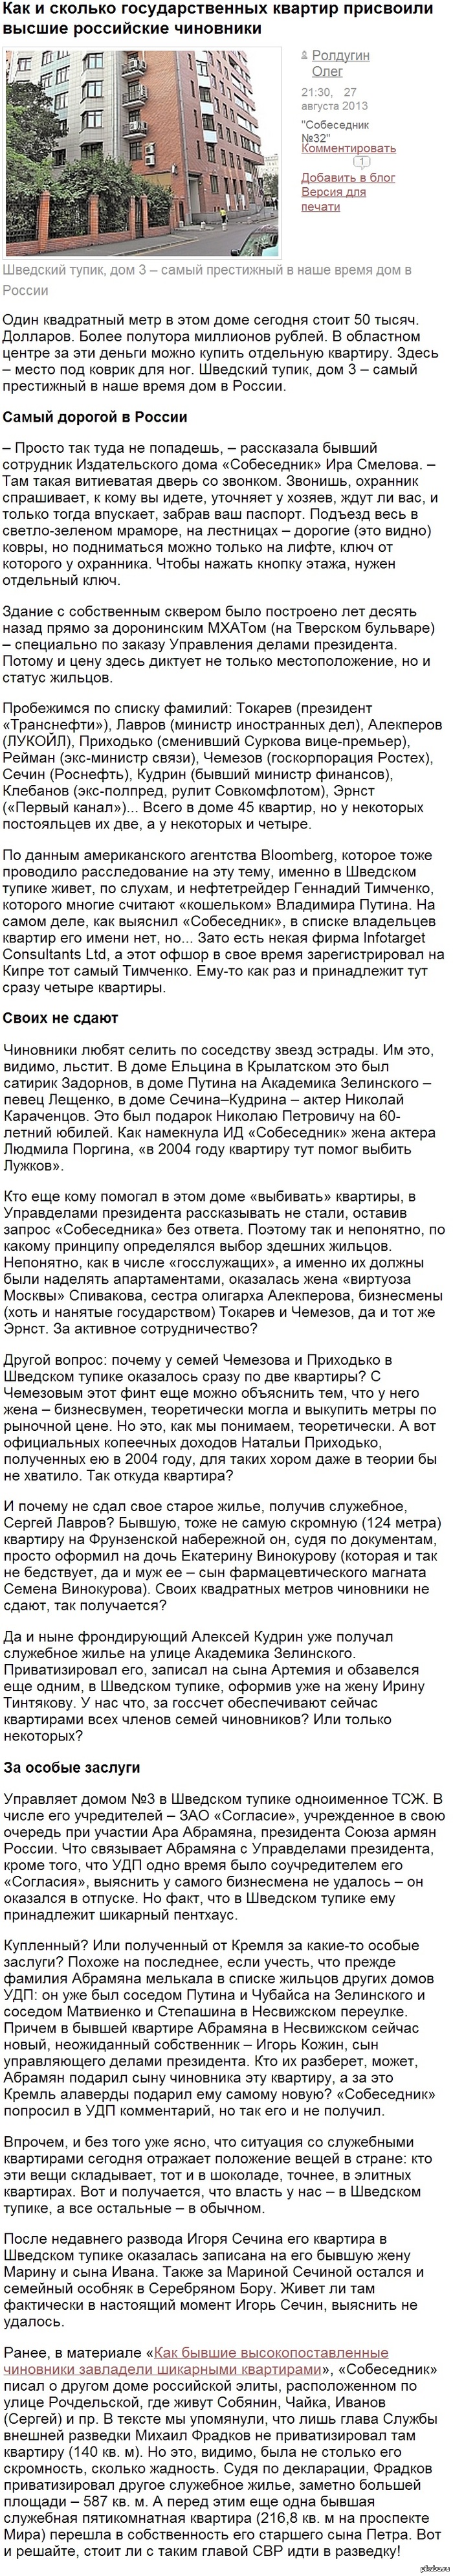          : http://sobesednik.ru/investigation/20130827-kak-i-skolko-gosudarstvennykh-kvartir-prisvoili-vysshie-rossiiskie-chinovniki